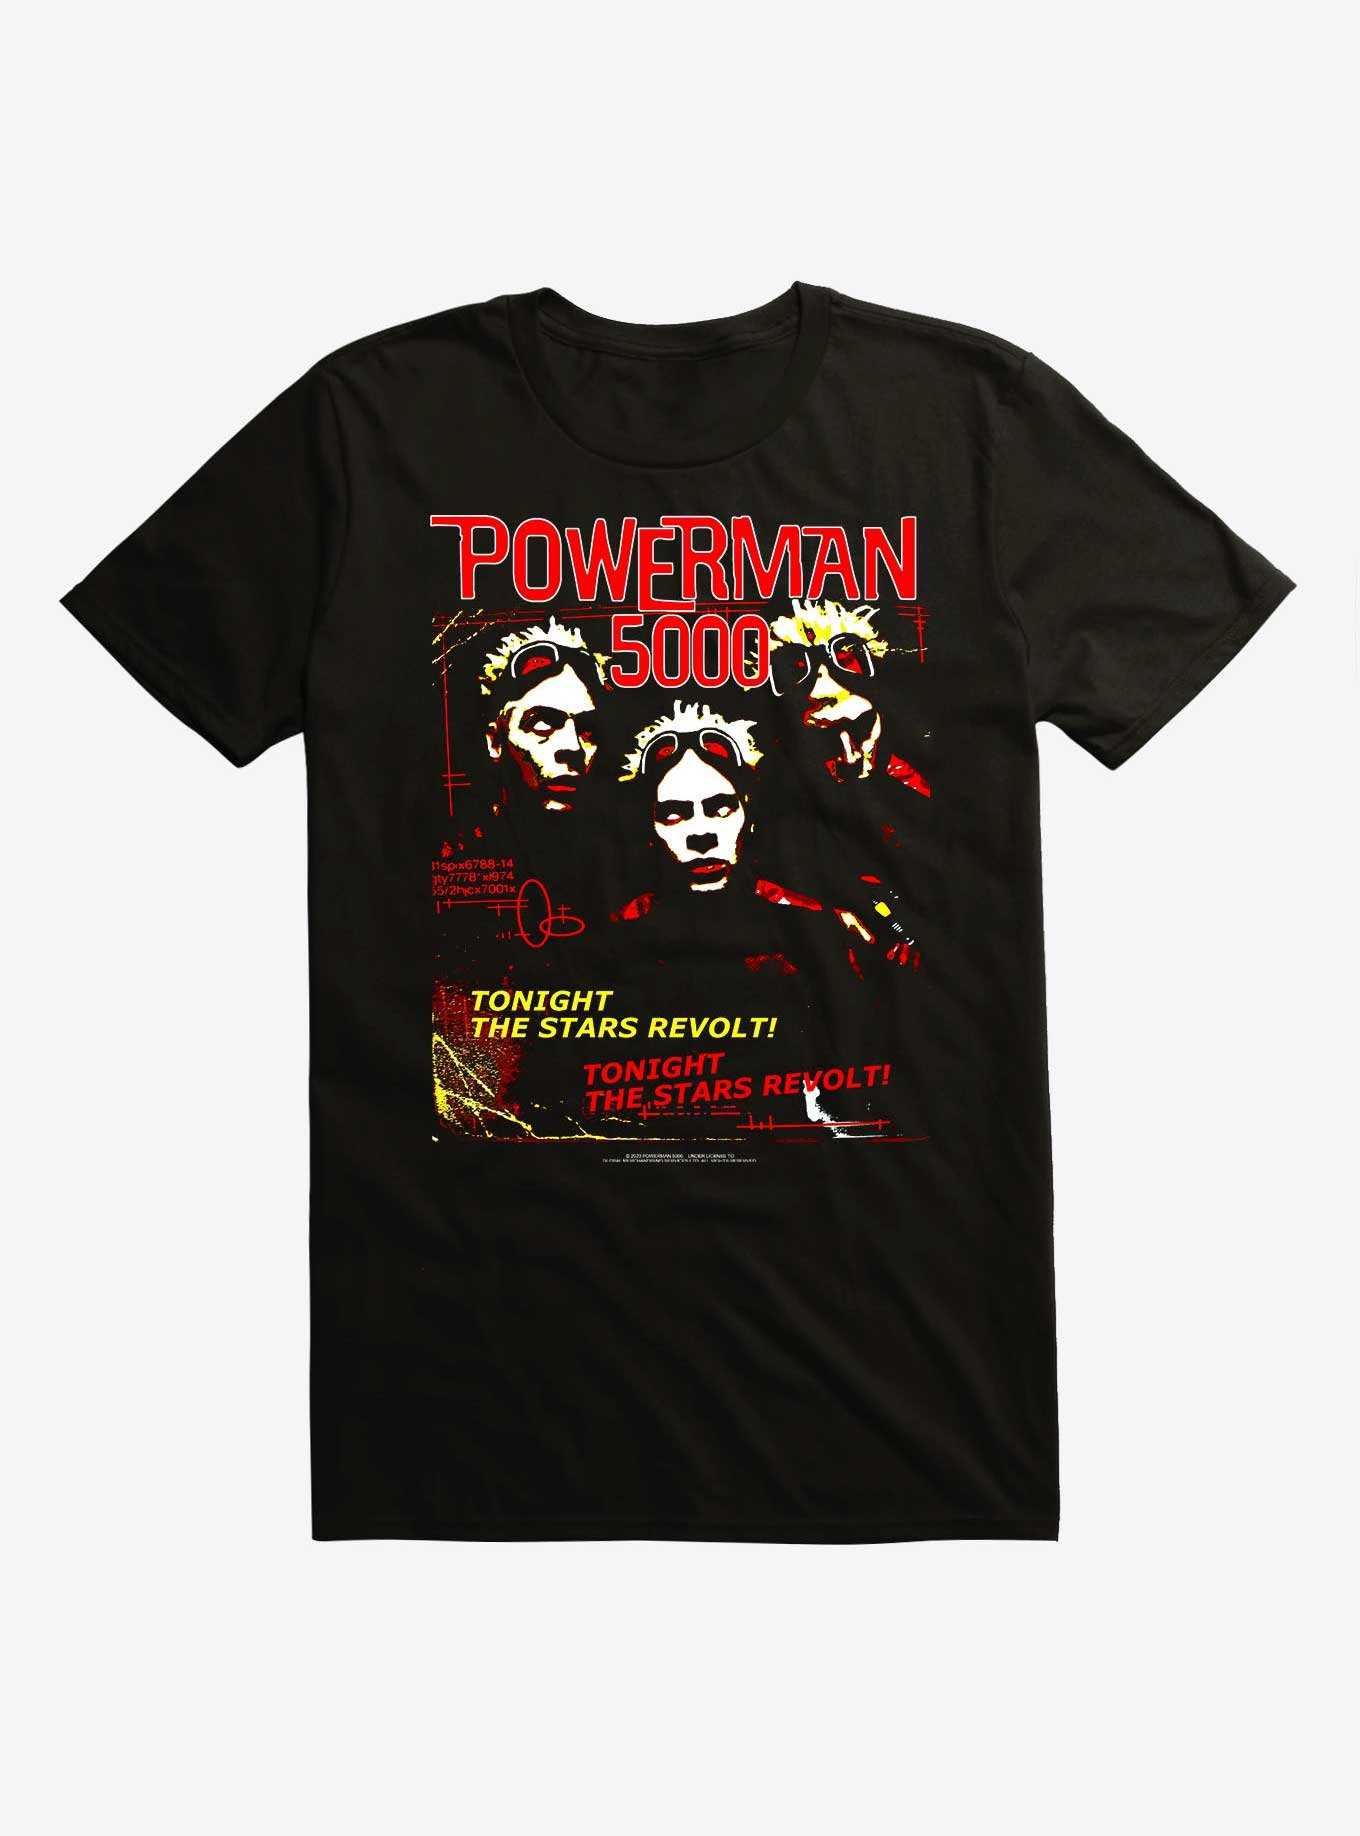 Powerman 5000 The Stars Revolt T-Shirt, , hi-res